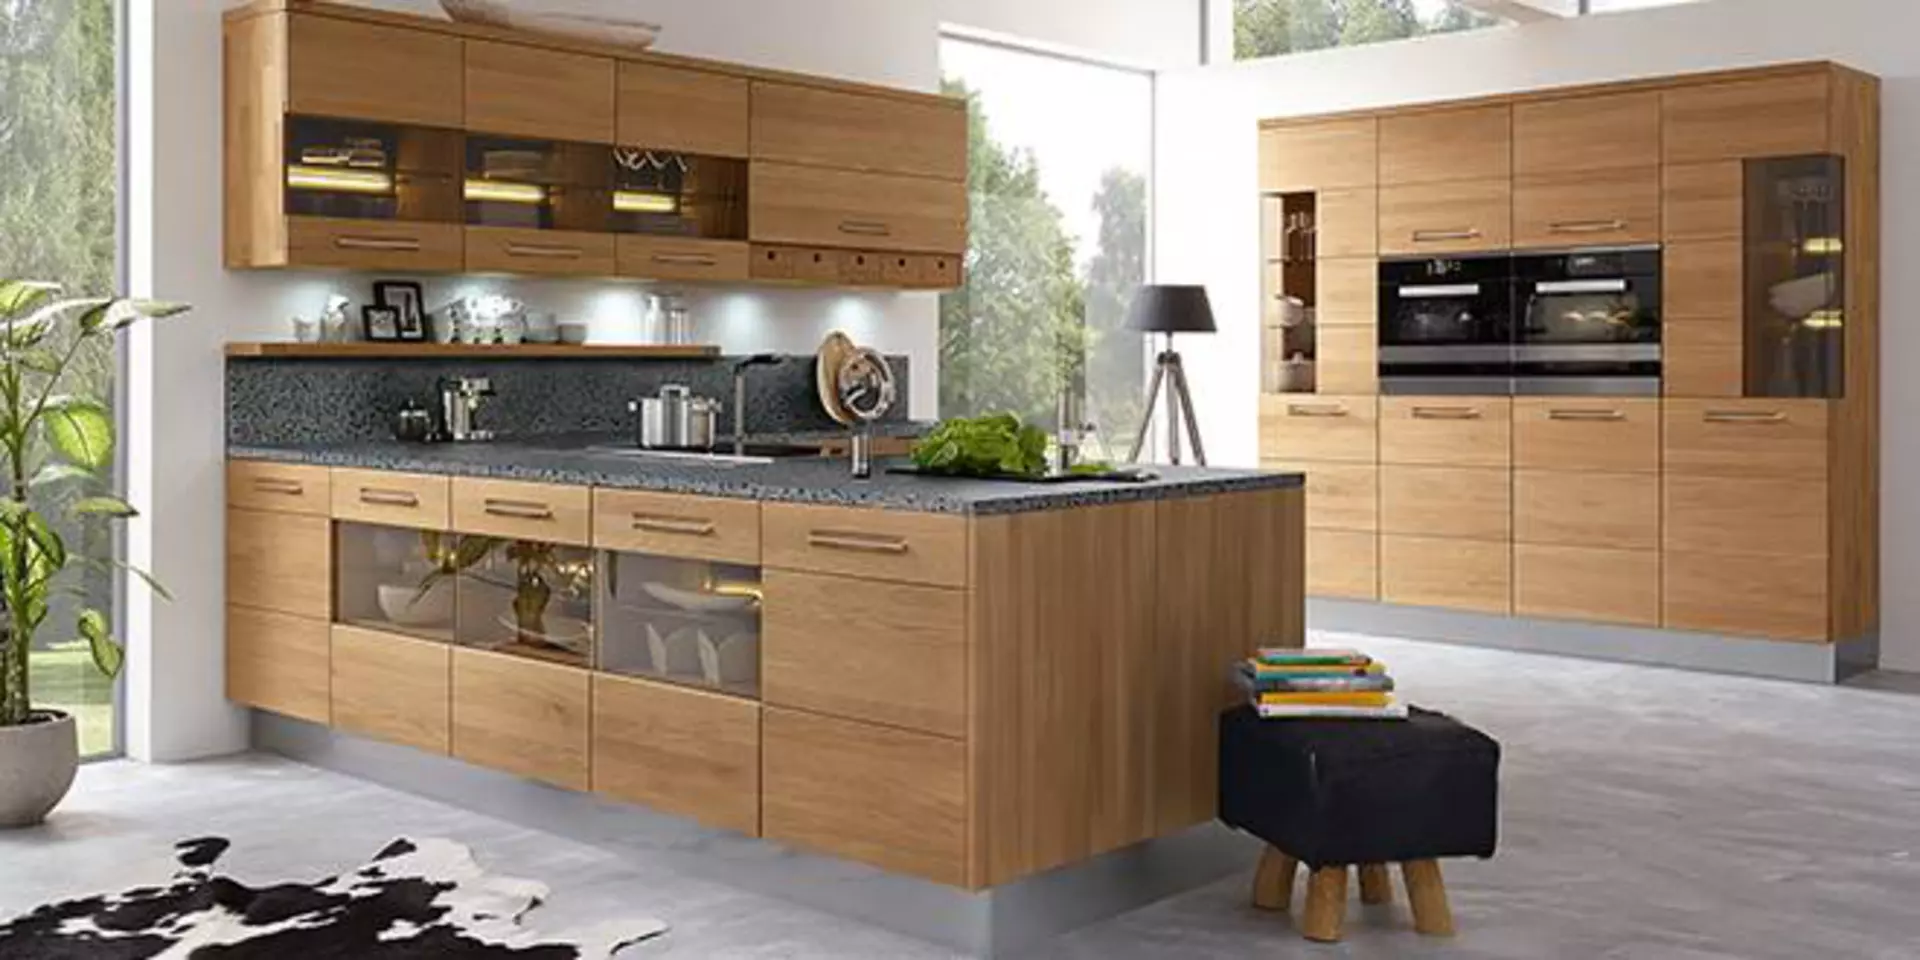 Moderne Küche aus Massivholz und Naturstein-Arbeitsplatte. Die Küche ist in L-Form gestaltet, wobei ein Teil als Kücheninsel den Raum zum Wohnbereich abtrennt. Die edle First-Calls-Küche ist von der Marke Decker.